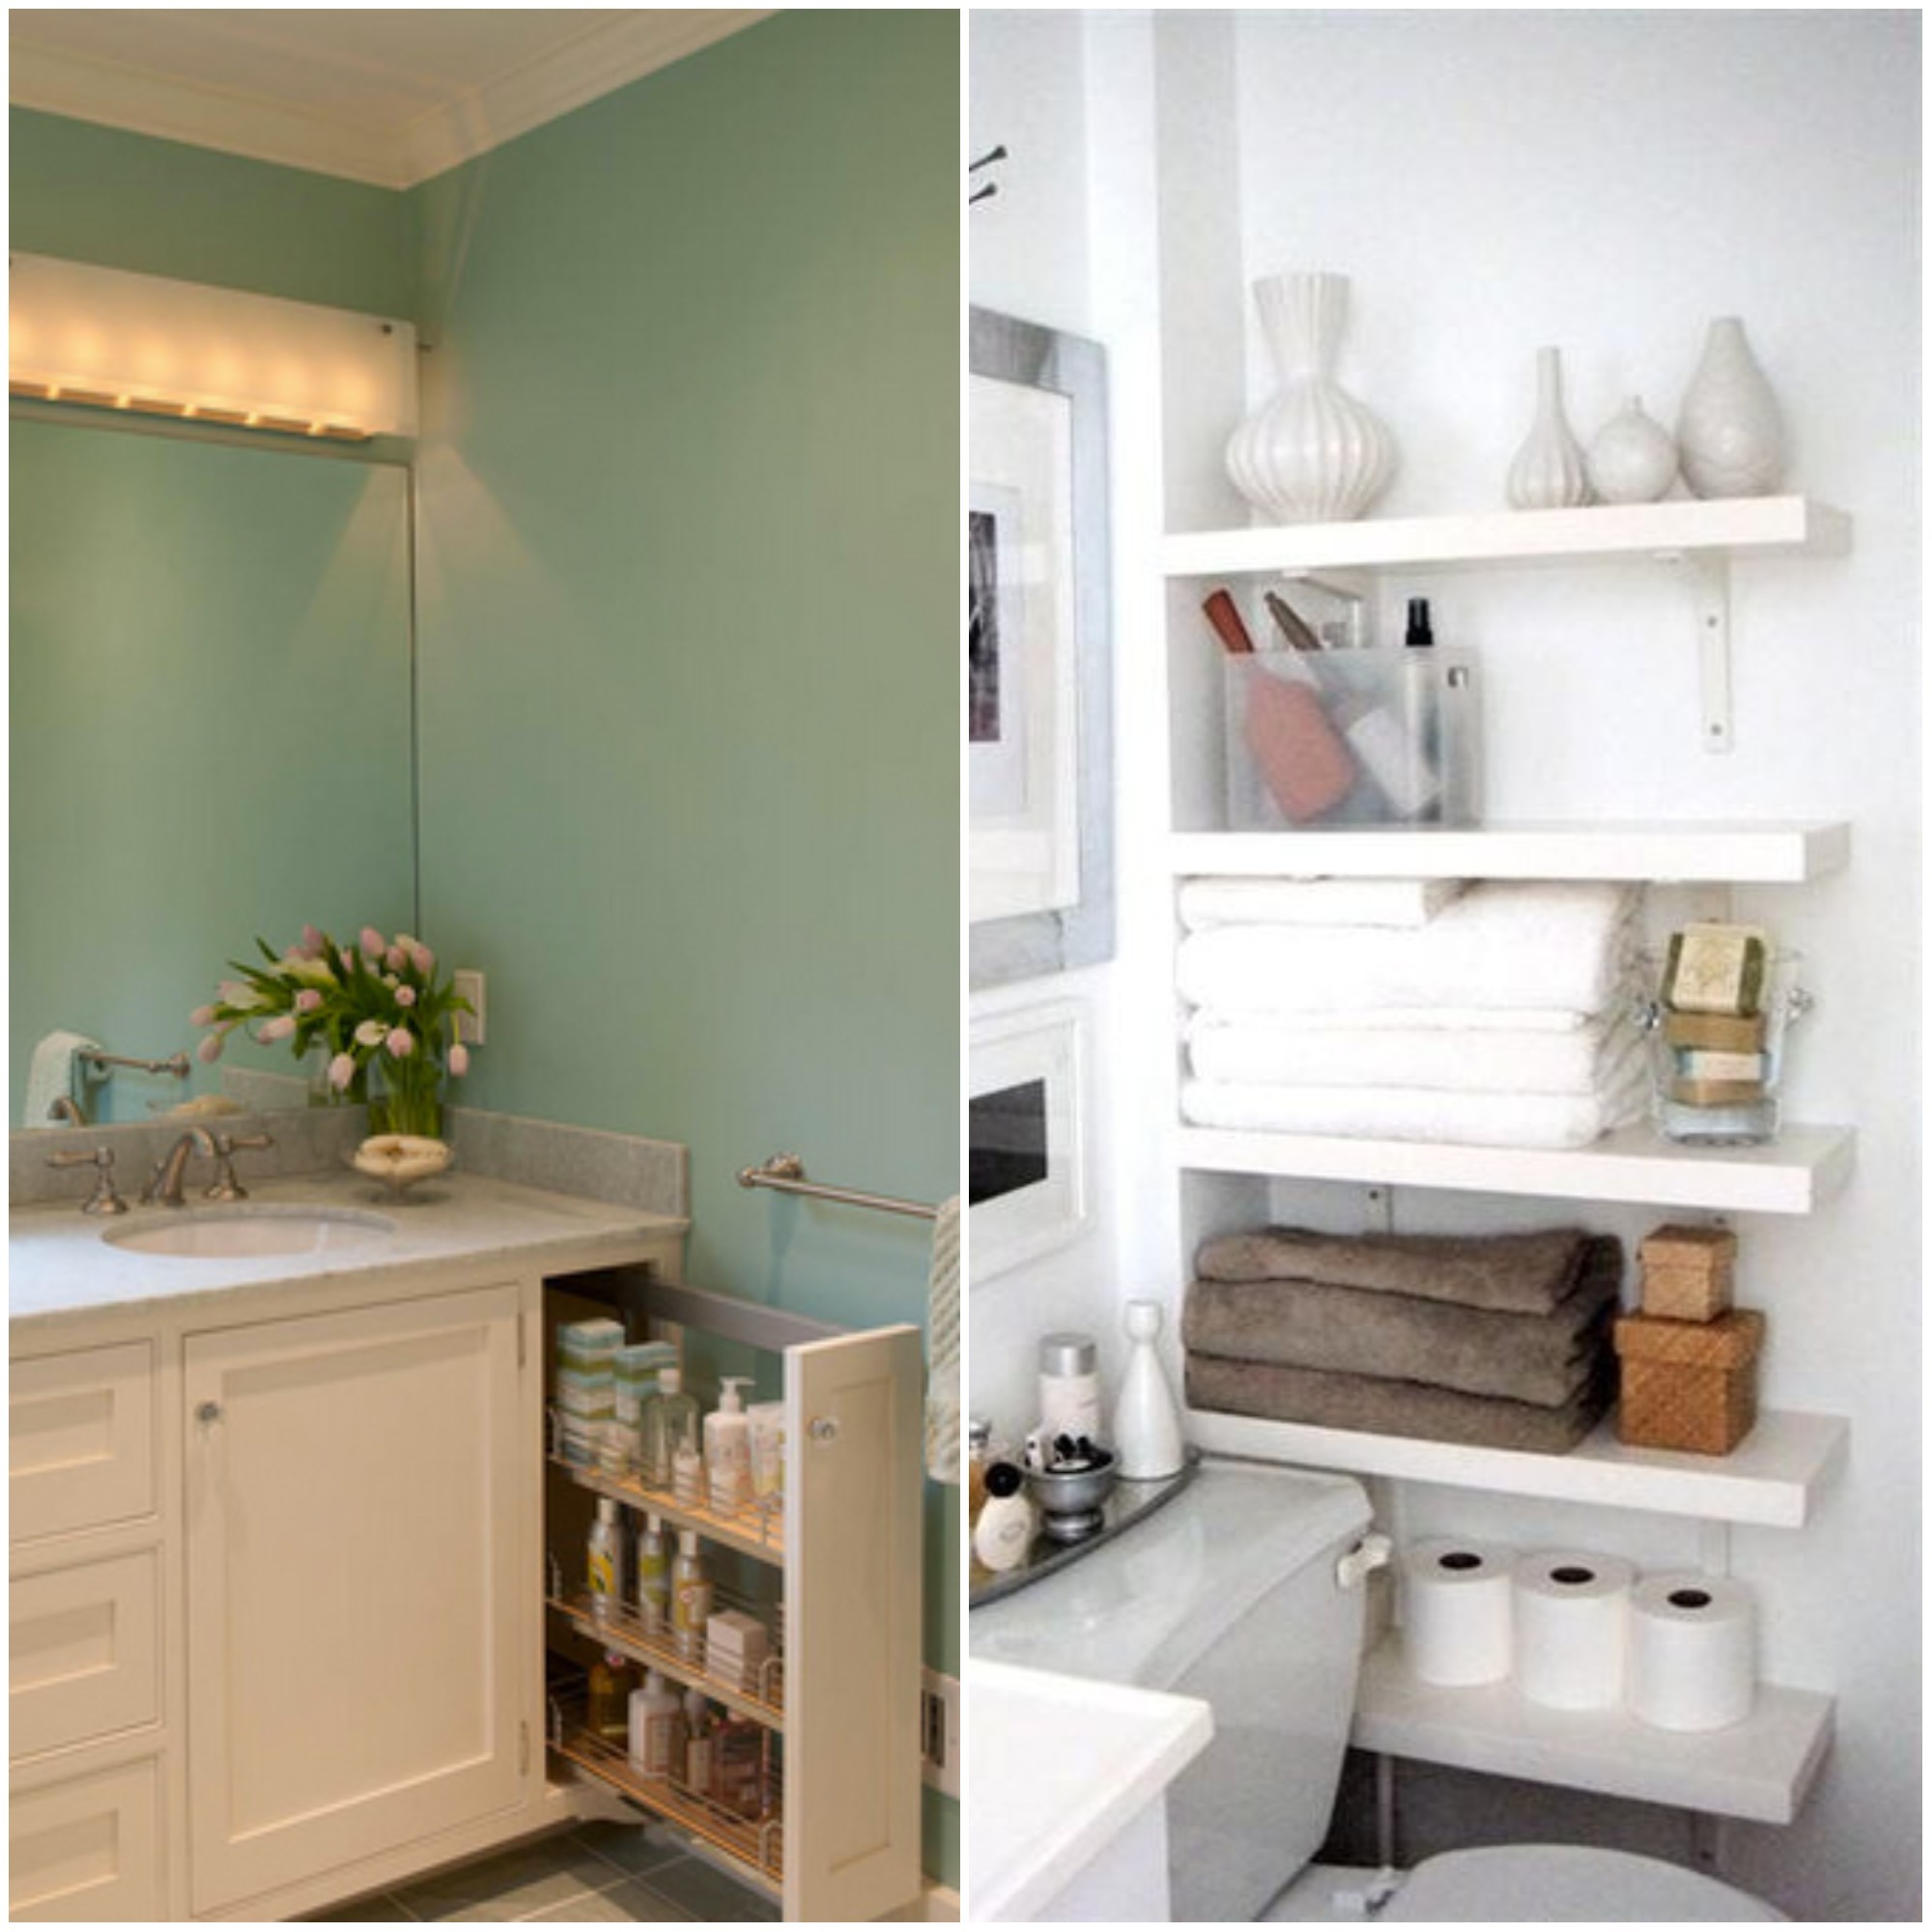 ◉ Cómo iluminar y decorar baños pequeños